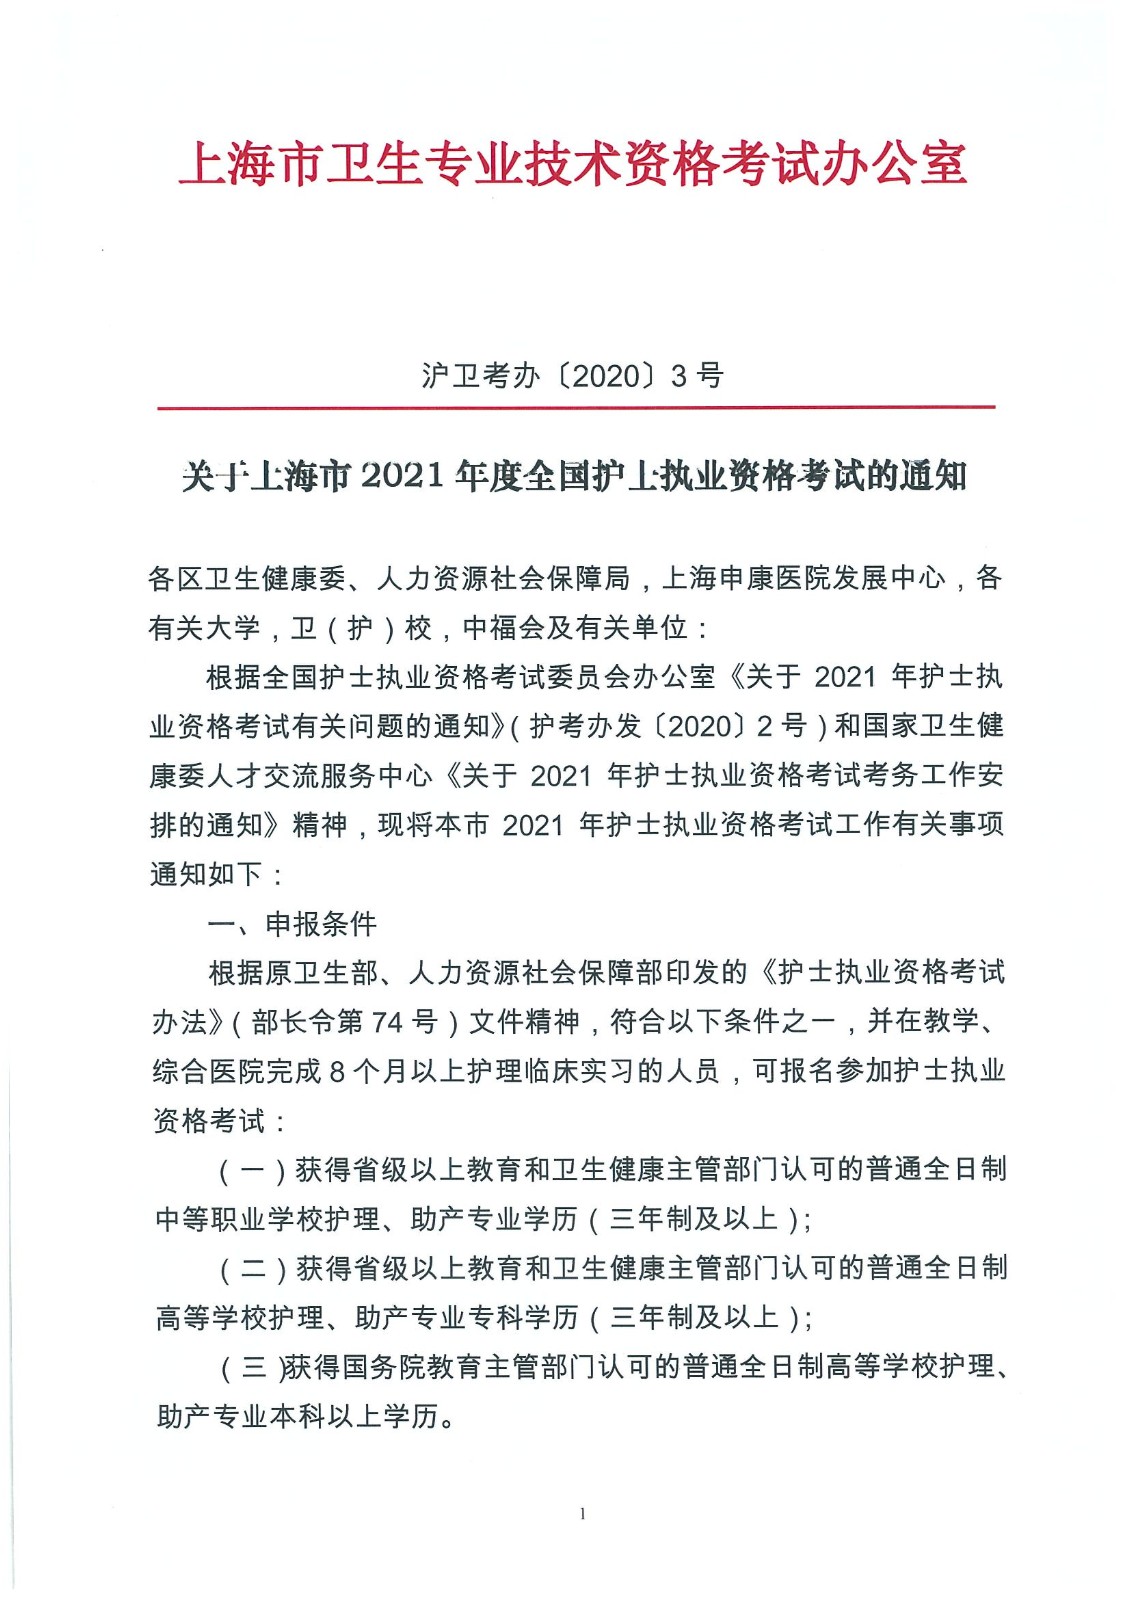 上海市2021年度全国护士执业资格考试通知